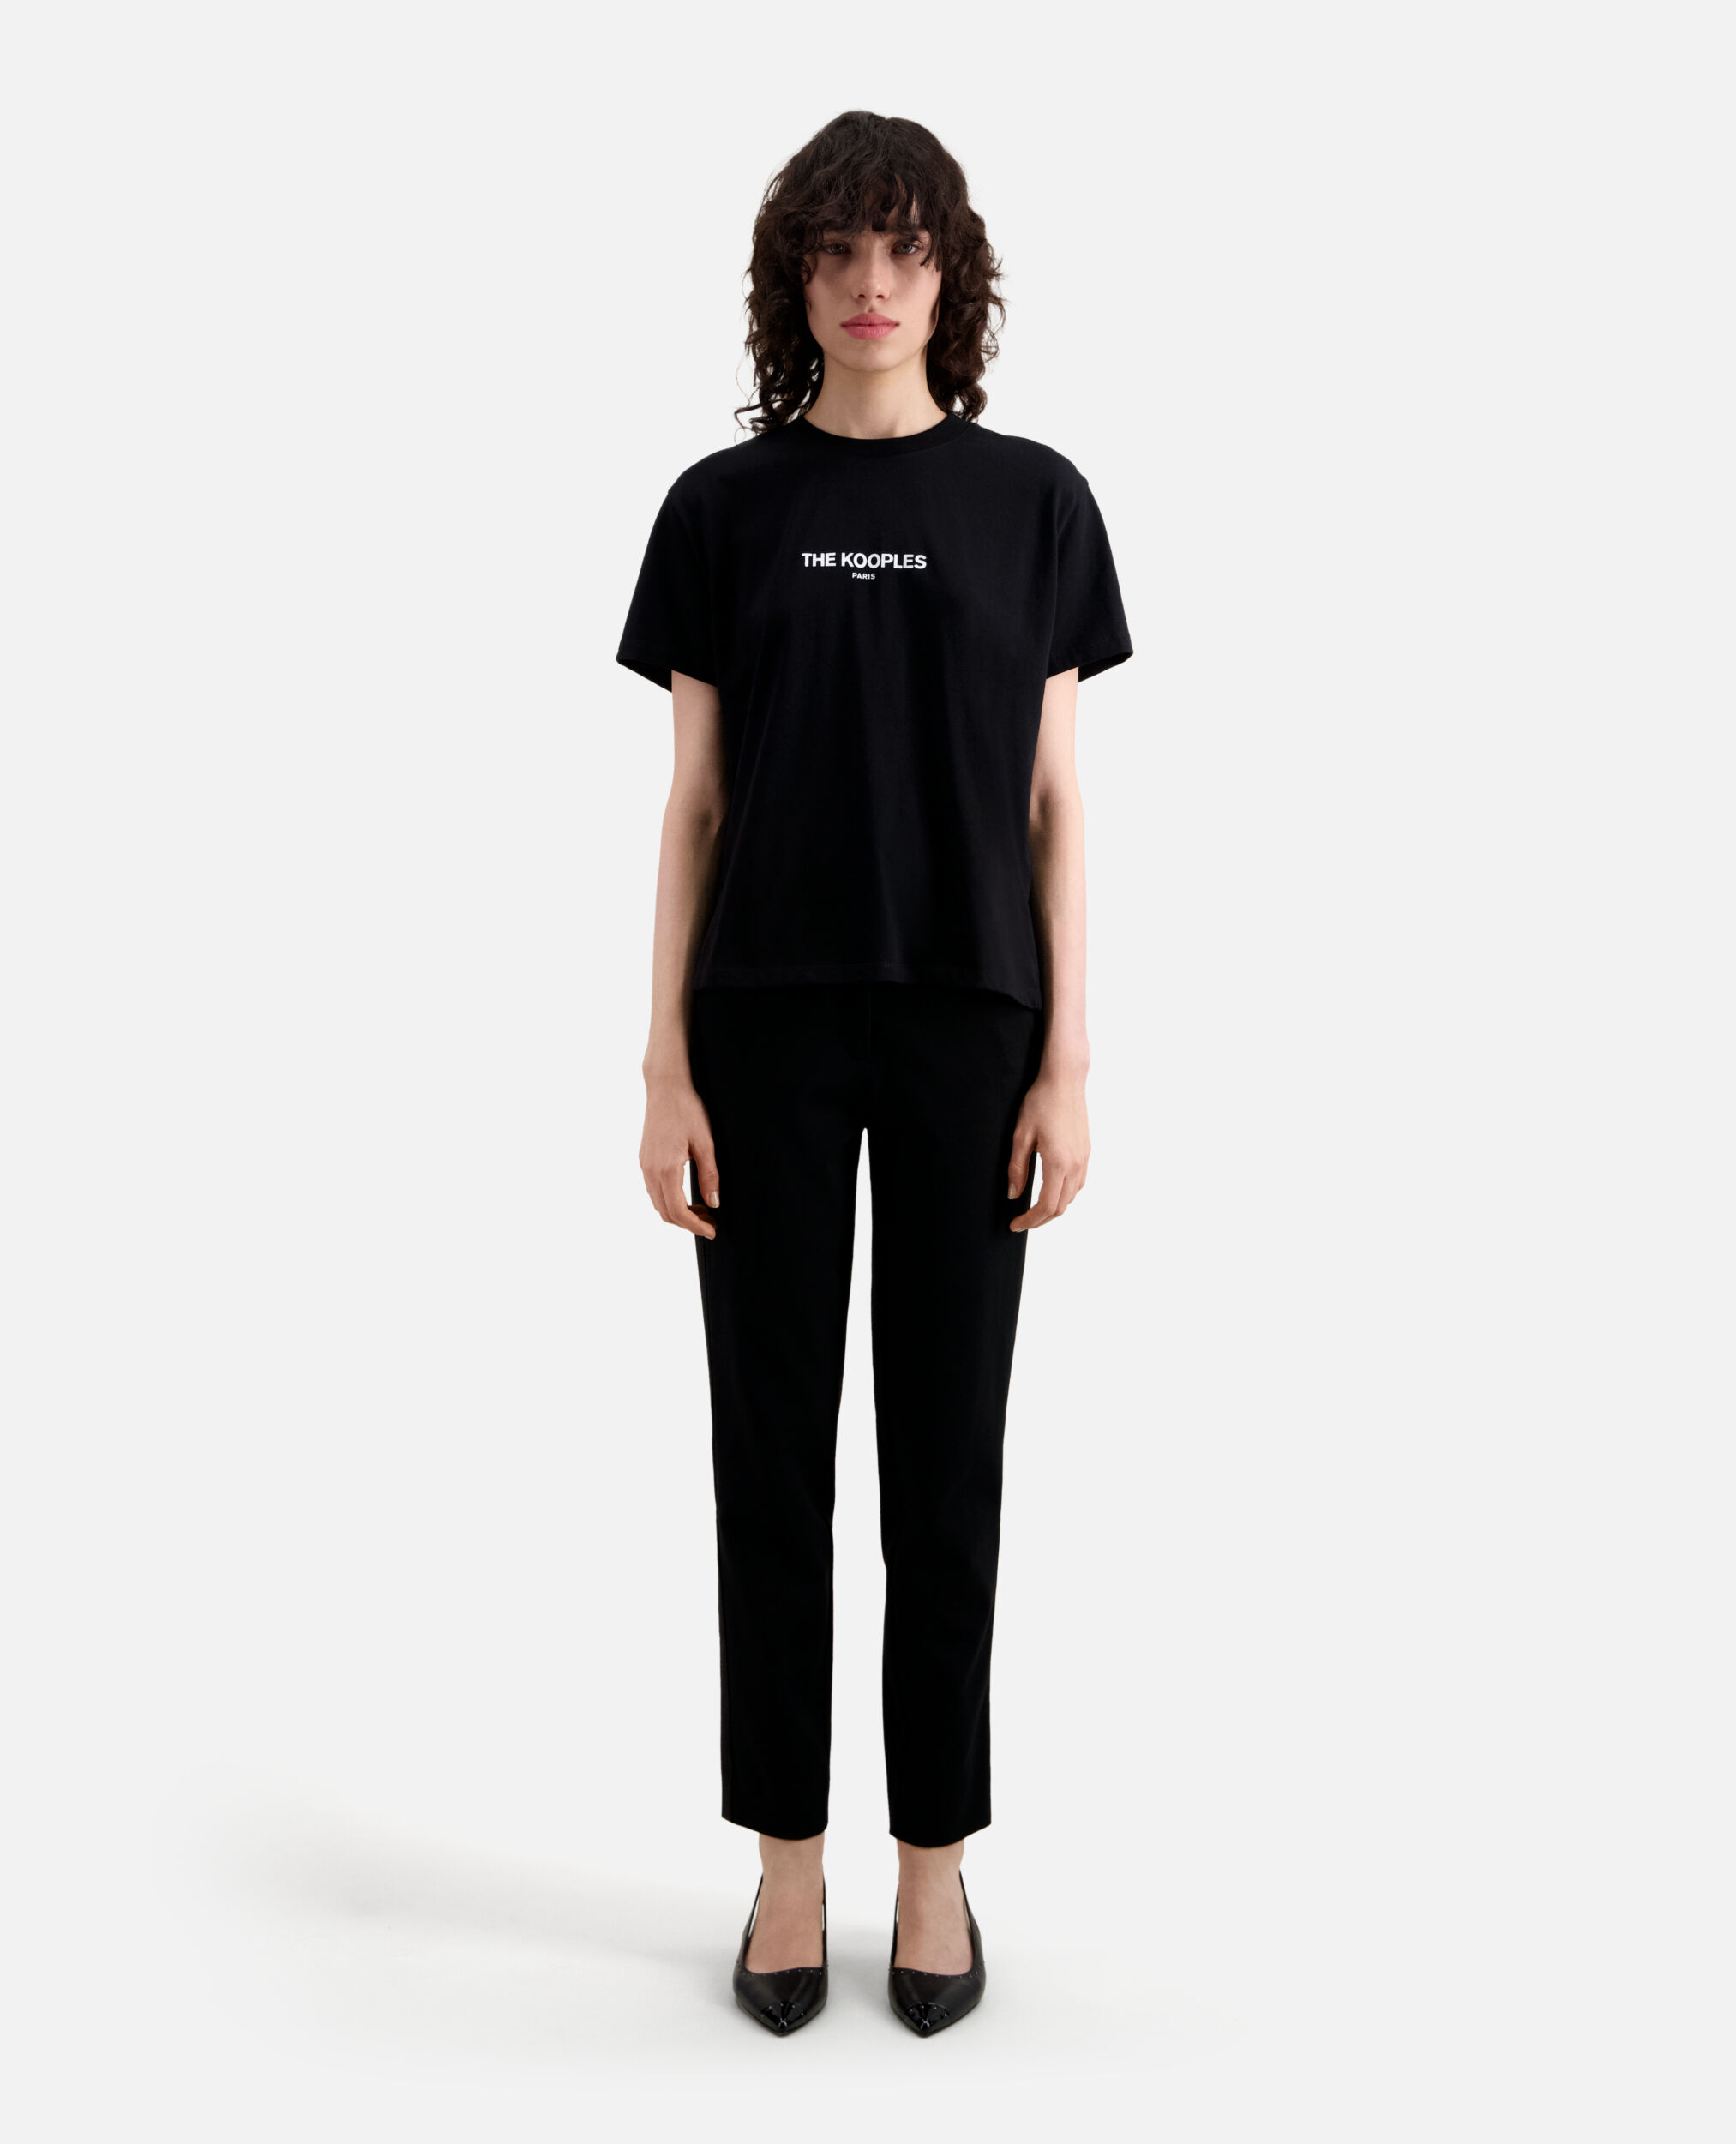 T-shirt Femme Logo noir, BLACK, hi-res image number null